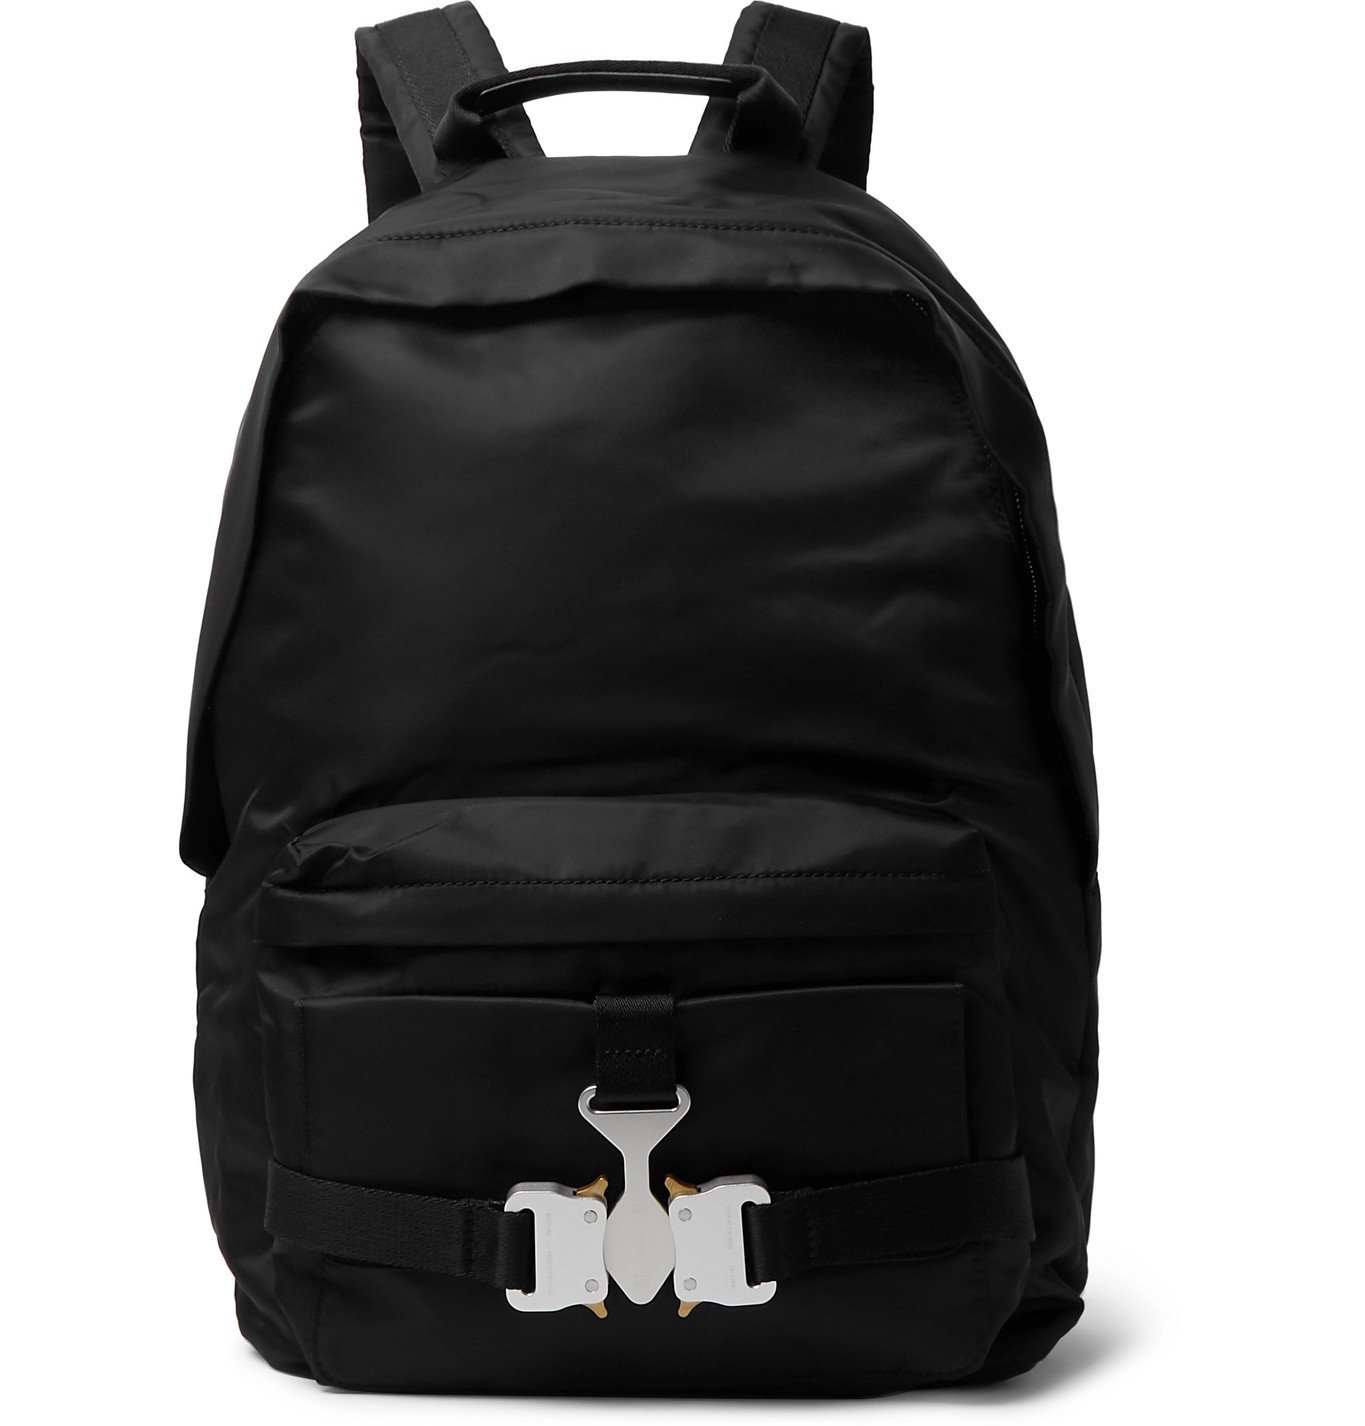 1017 ALYX 9SM - Tricon Nylon Backpack - Black 1017 ALYX 9SM